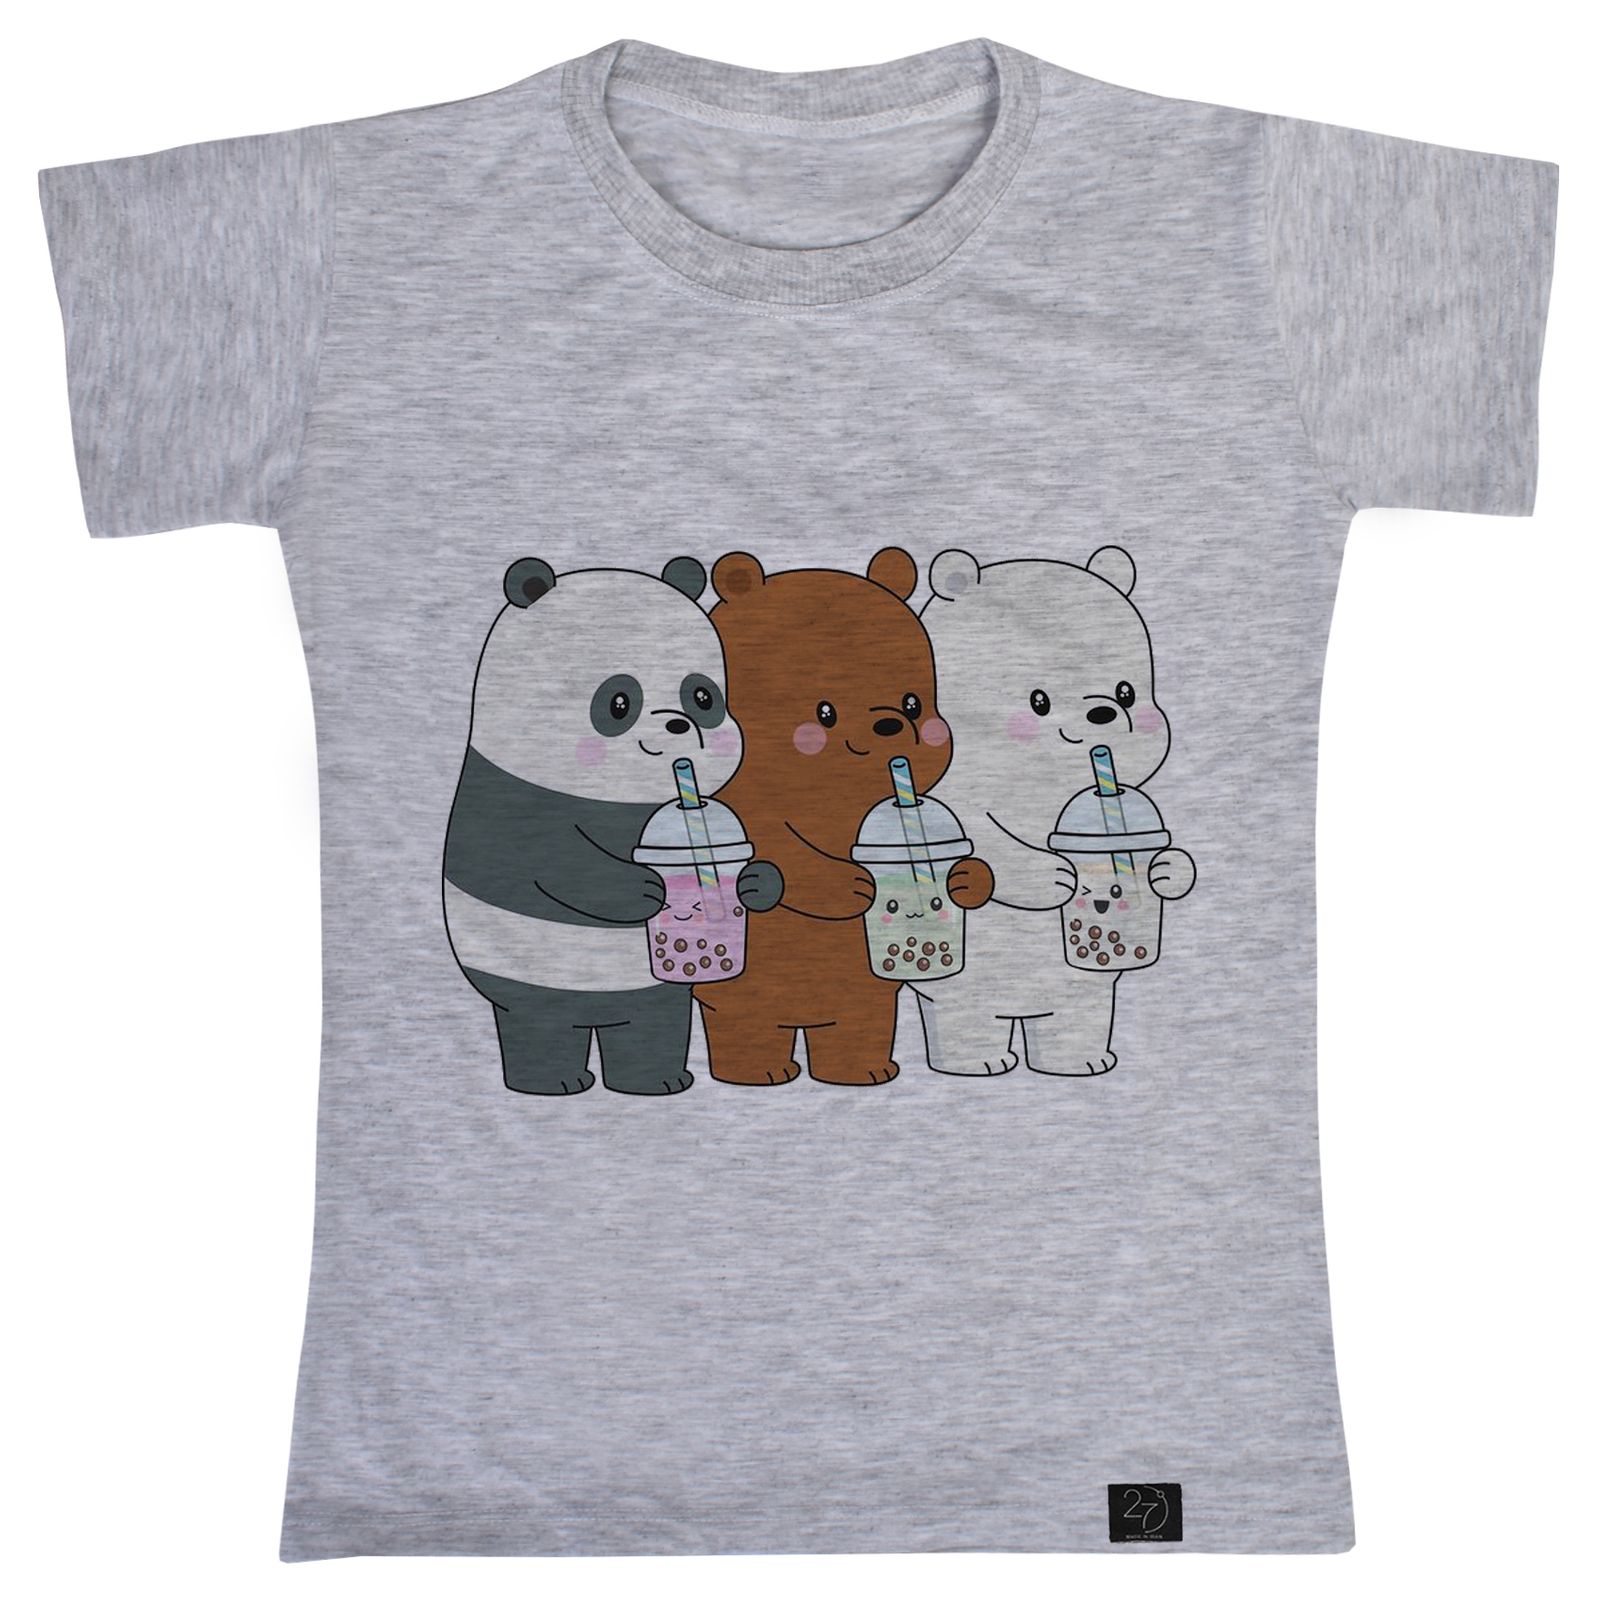 تی شرت دخترانه 27 مدل خرس ها کد G69 -  - 2